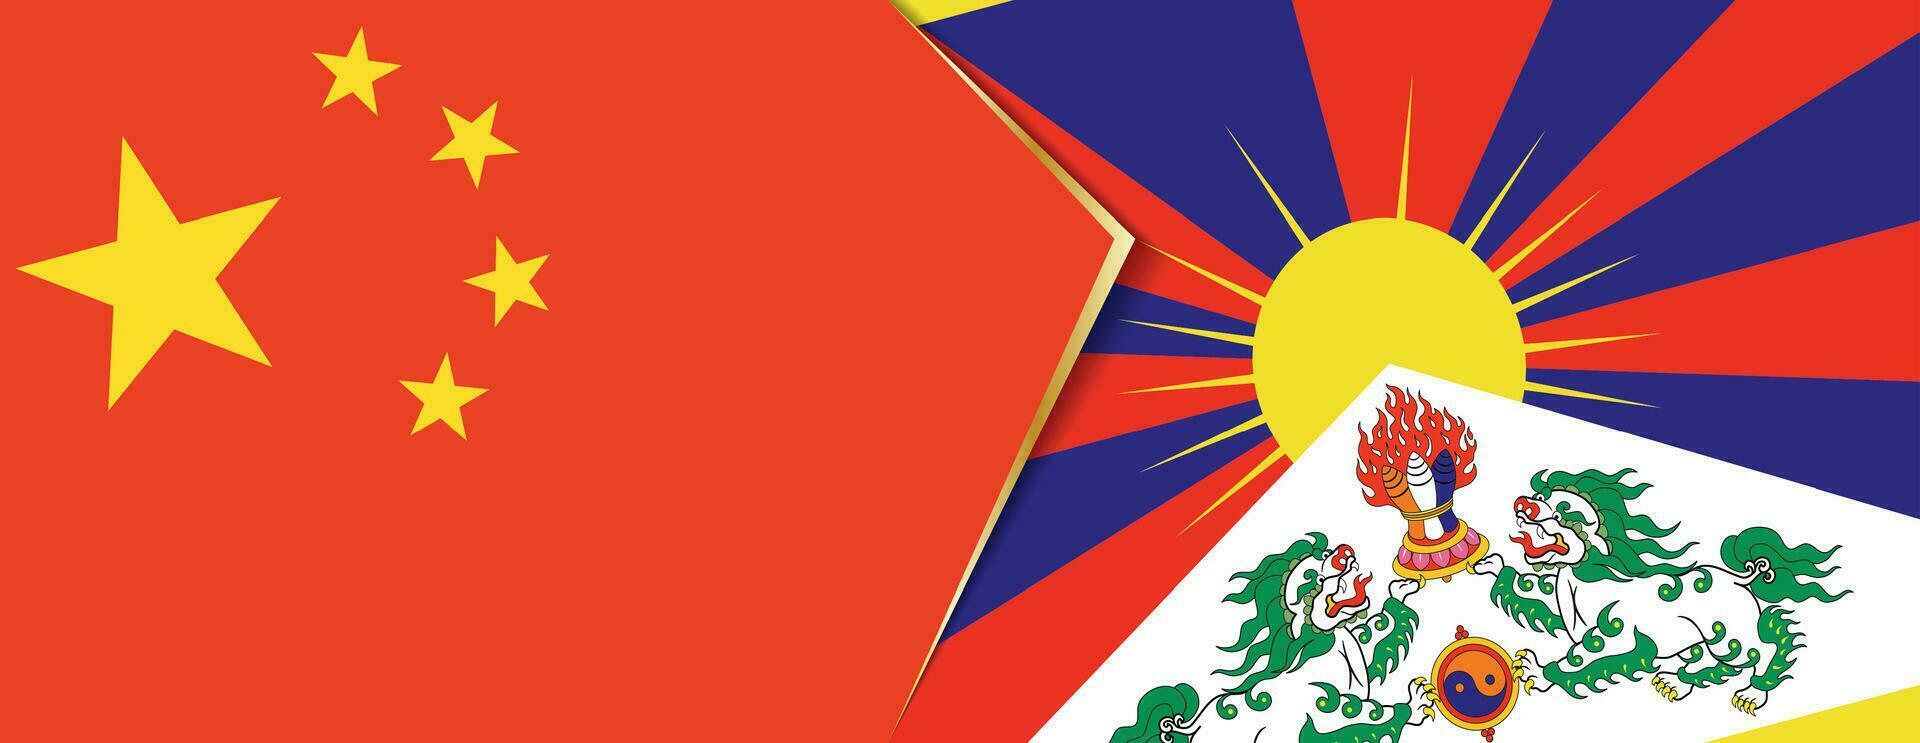 Chine et Tibet drapeaux, deux vecteur drapeaux.